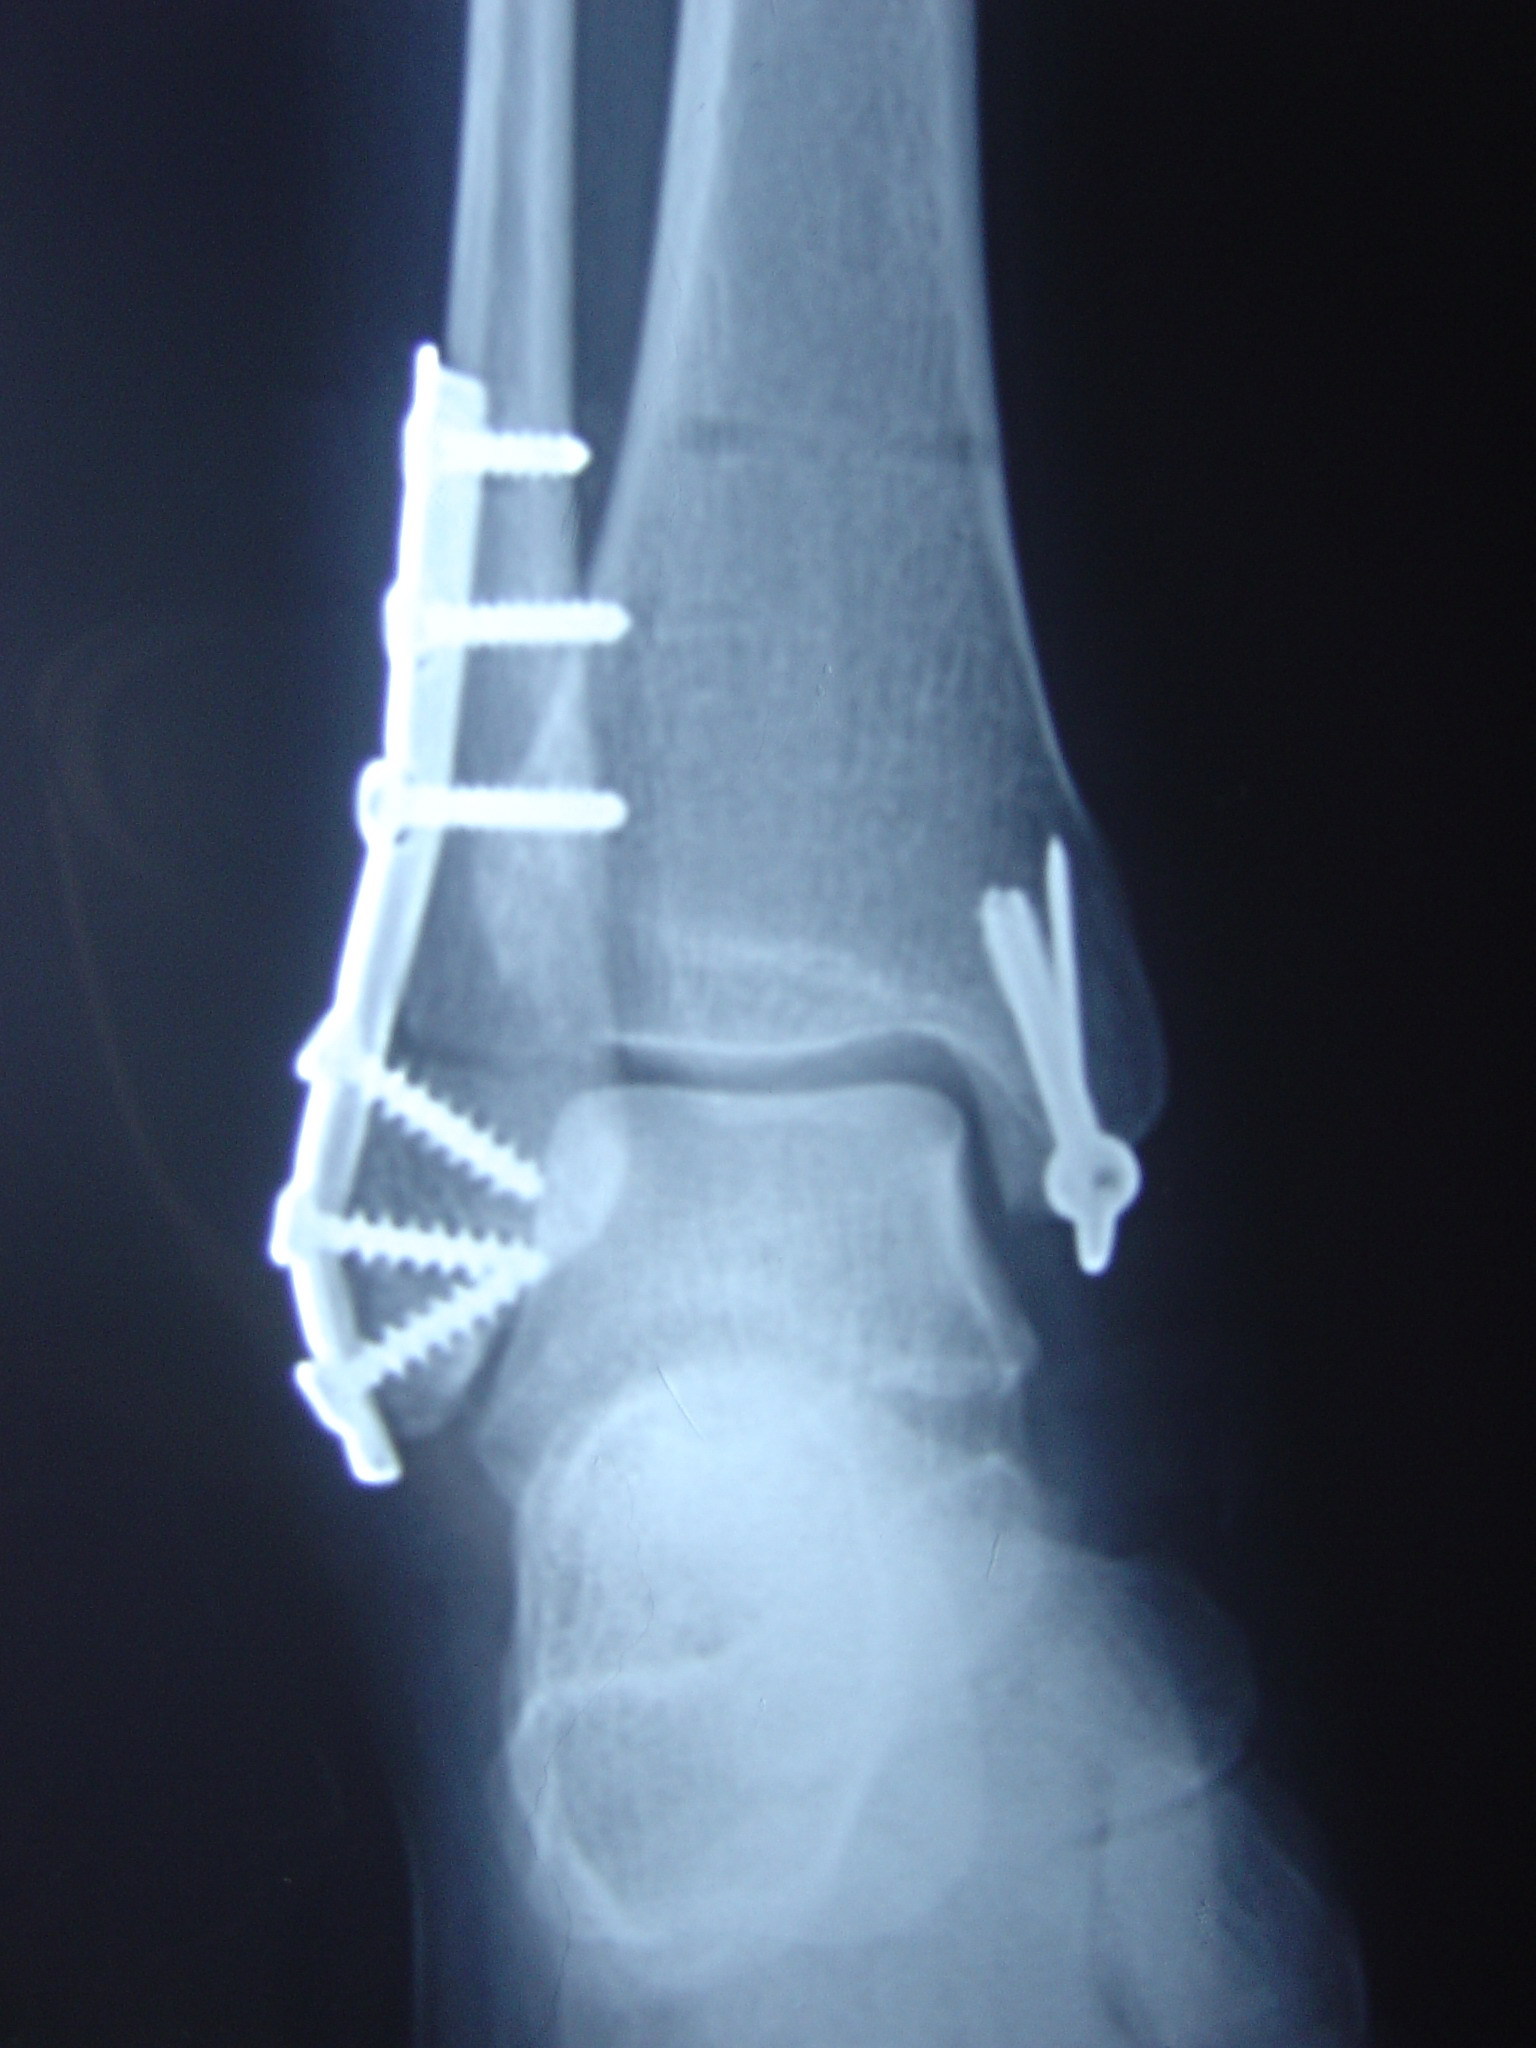 黄骨头踝关节骨折—三踝骨折一例（前外+后内侧入路） - 骨科专业讨论版 -丁香园论坛